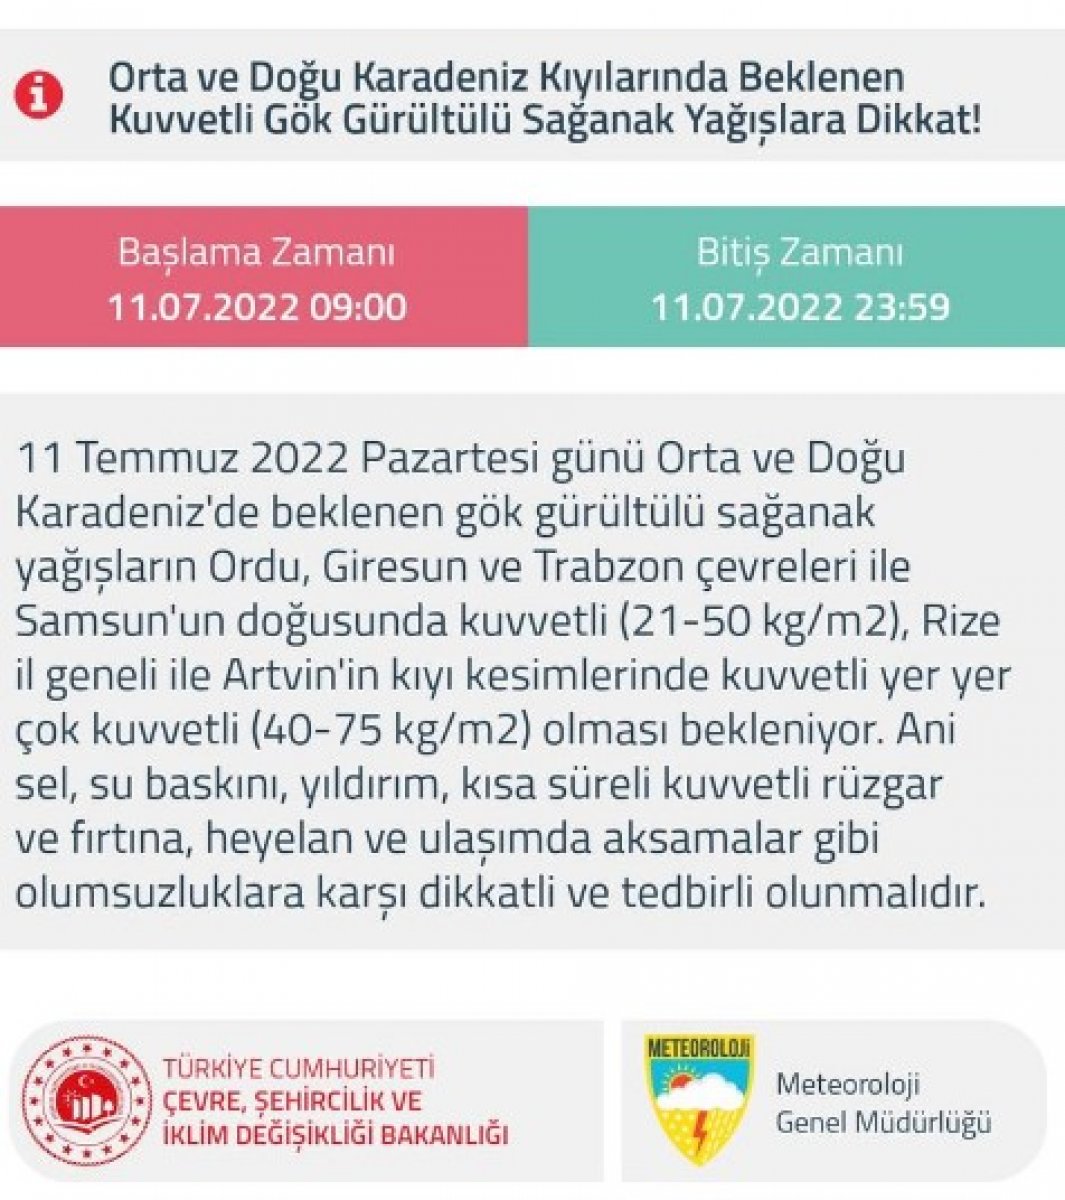 Türkiye nin 5 günlük hava raporu #1